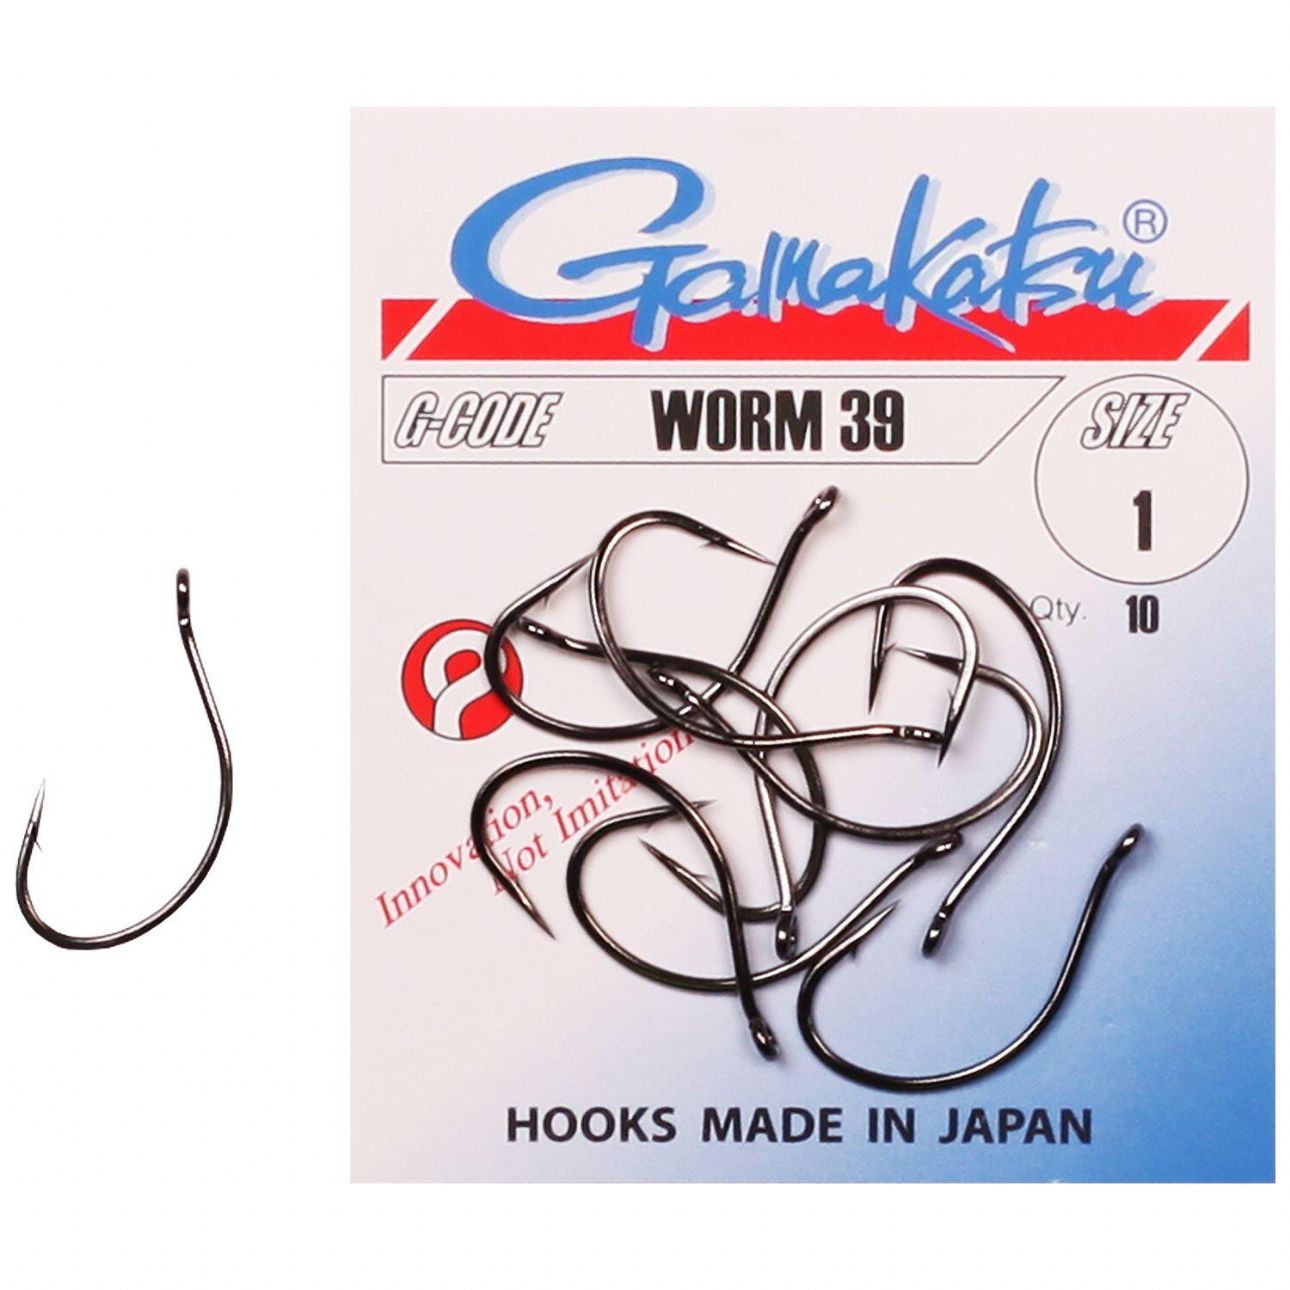 Gamakatsu Worm 39 Hooks from